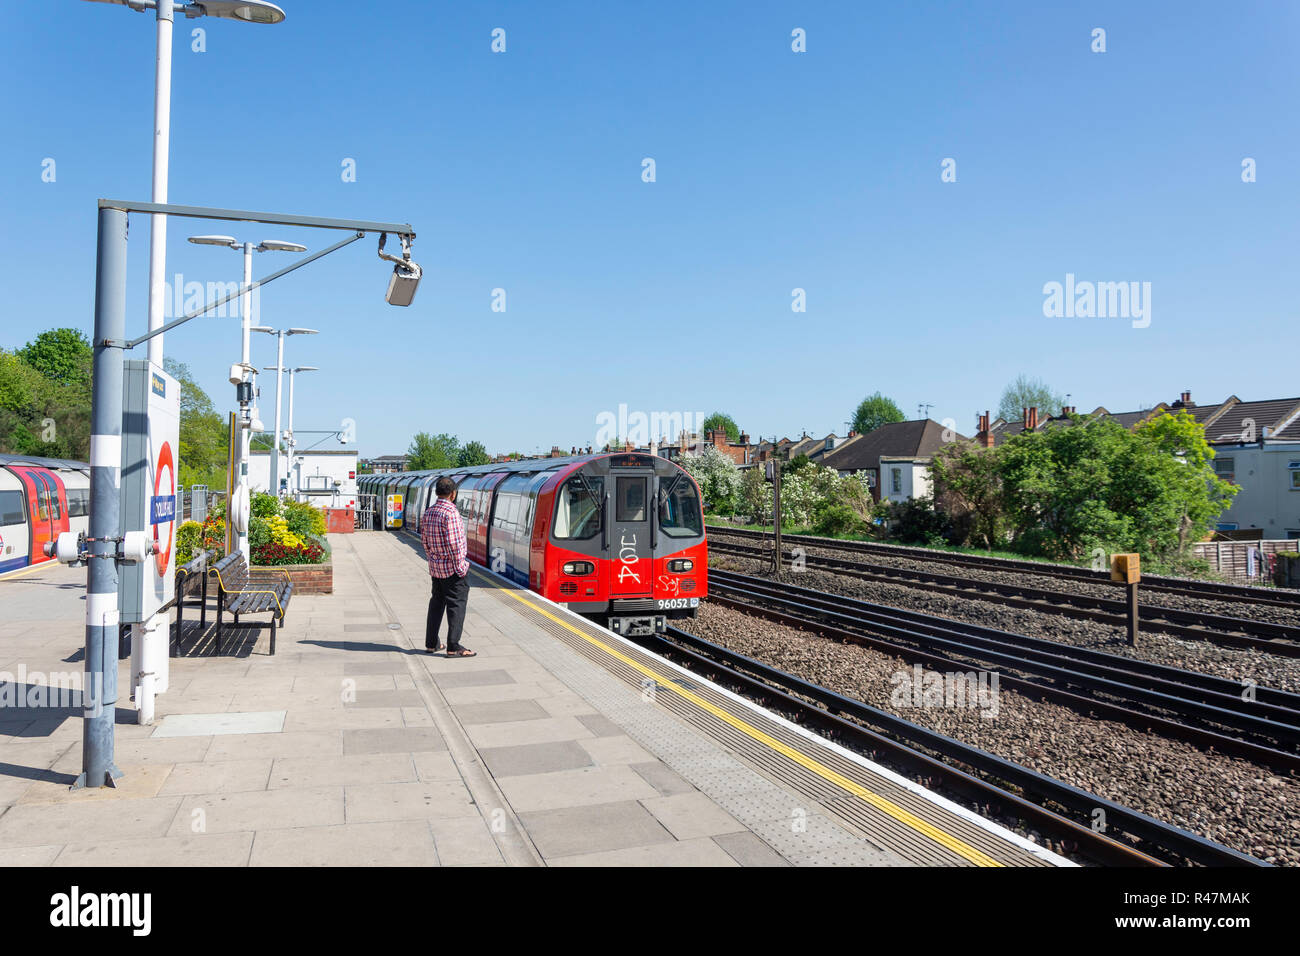 La plate-forme à Dollis Hill Station de métro, Dollis Hill, à Willesden, London Borough of Brent, Greater London, Angleterre, Royaume-Uni Banque D'Images